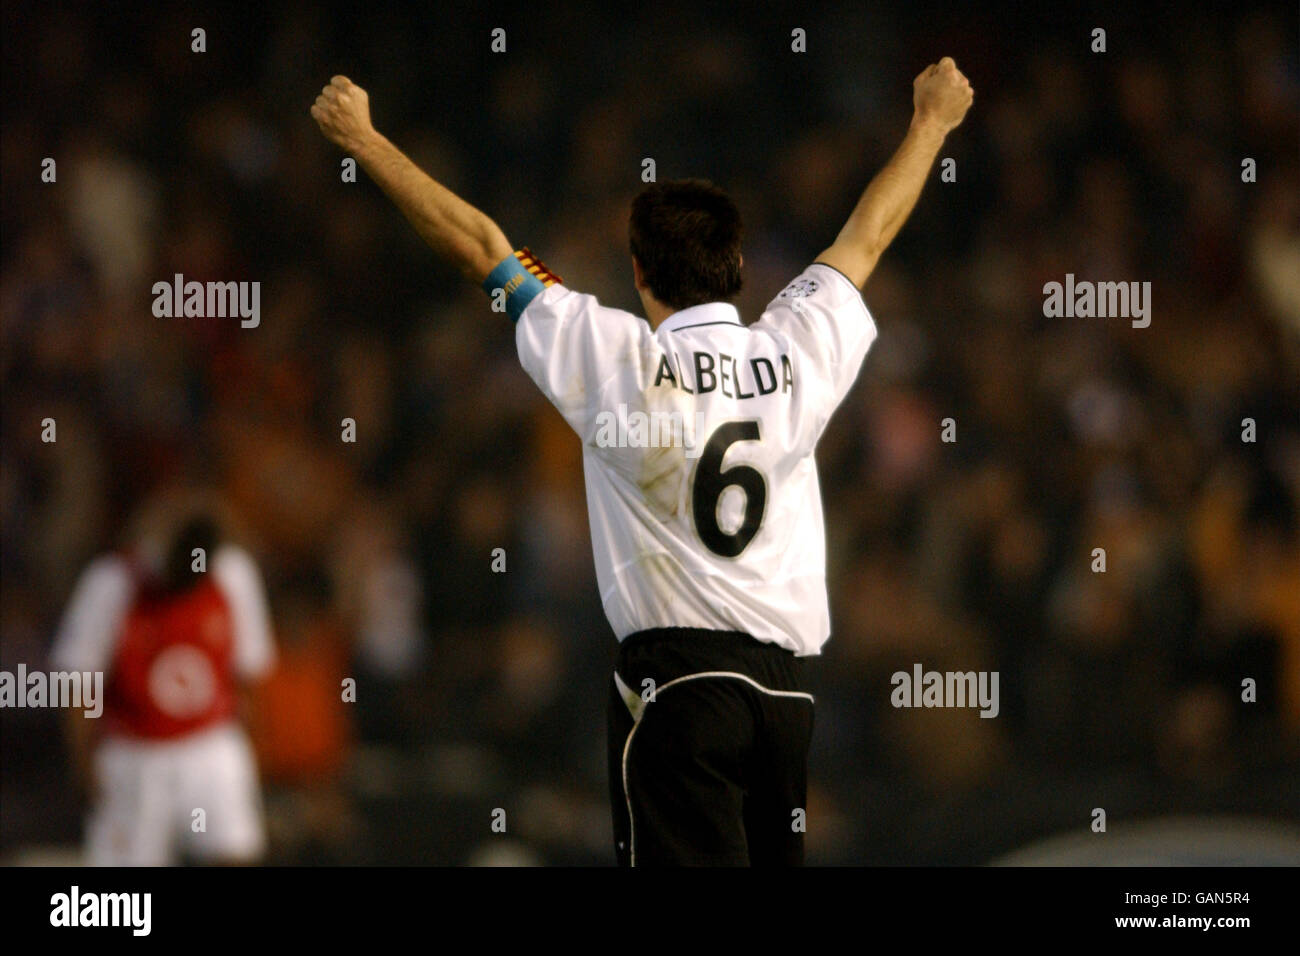 Soccer - UEFA Champions League - Group B - Valencia v Arsenal. Valencia's David Albelda celebrates victory Stock Photo